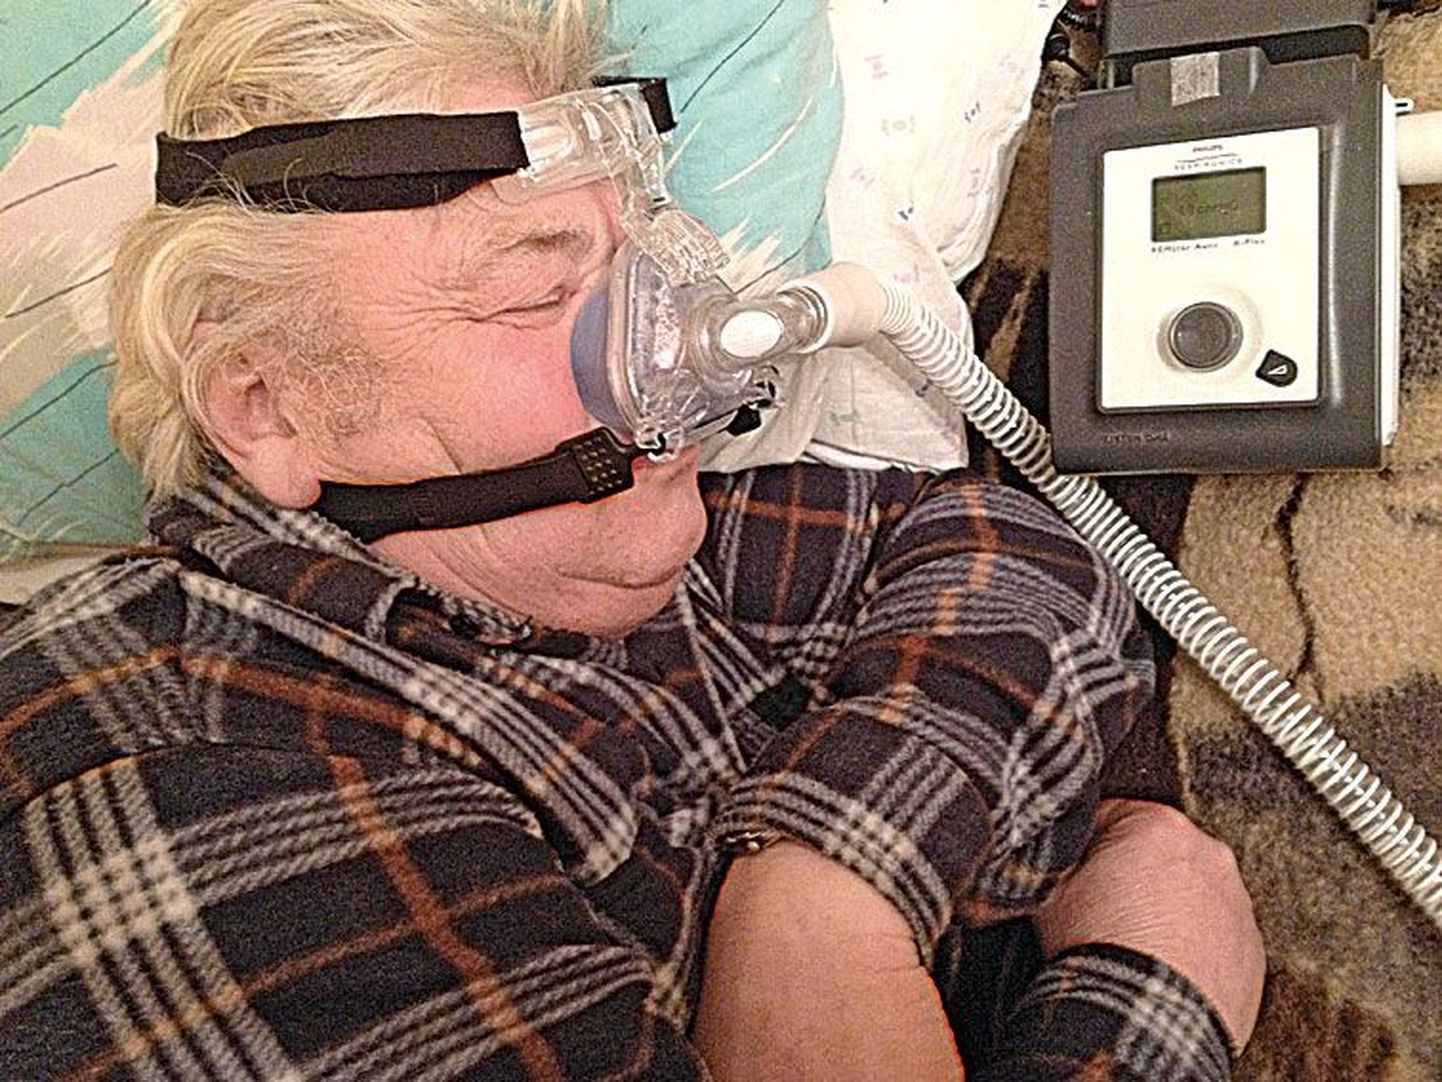 Воотеле Марди использует СРАР-аппарат больше месяца, и остановки дыхания во сне сократились в несколько раз.